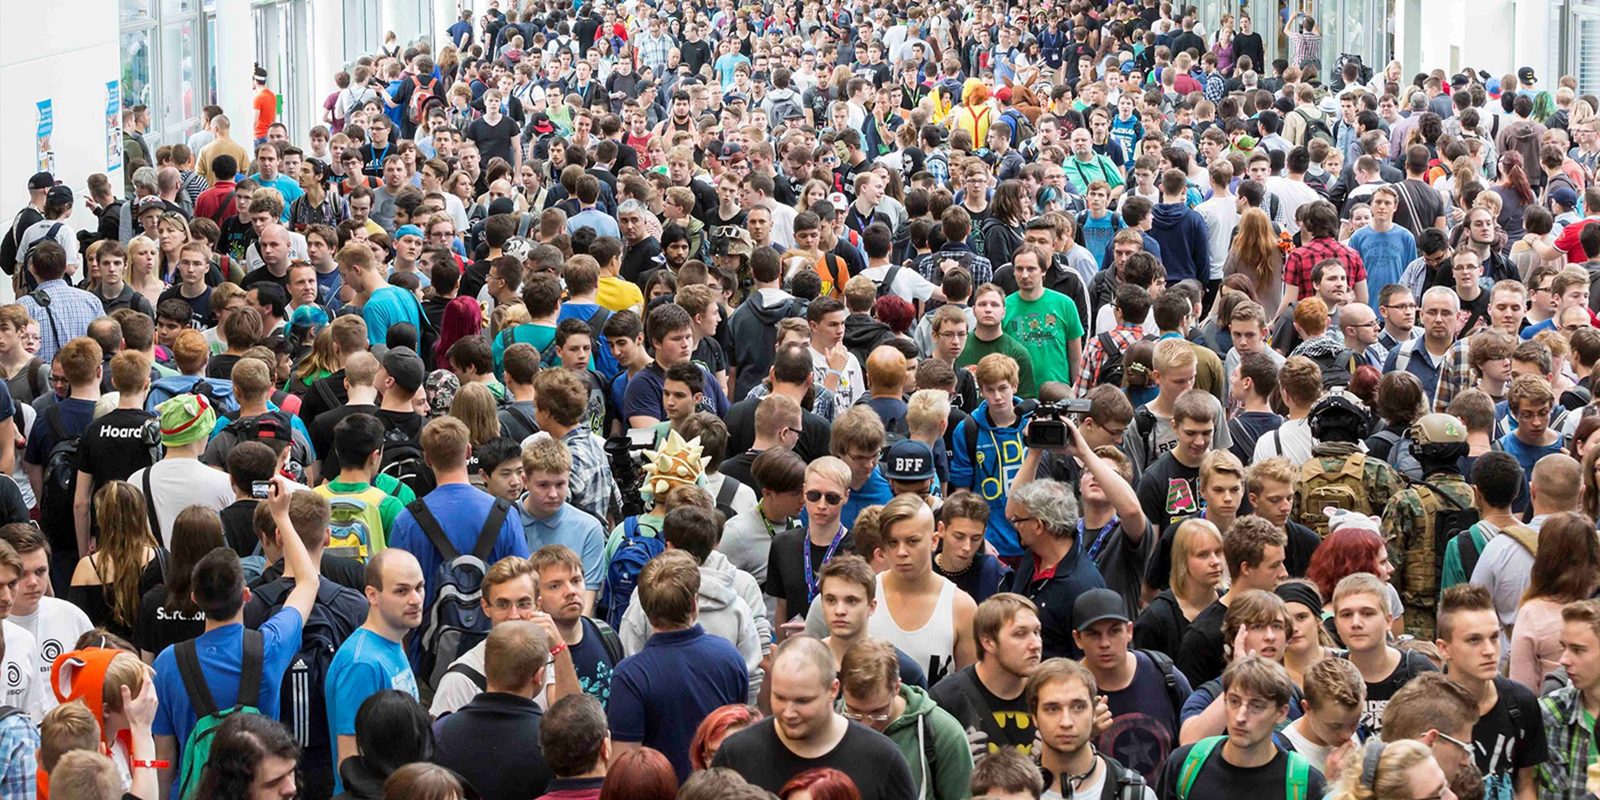 La Gamescom 2016 cierra exitosamente con 345.000 visitantes y un aumento en expositoras